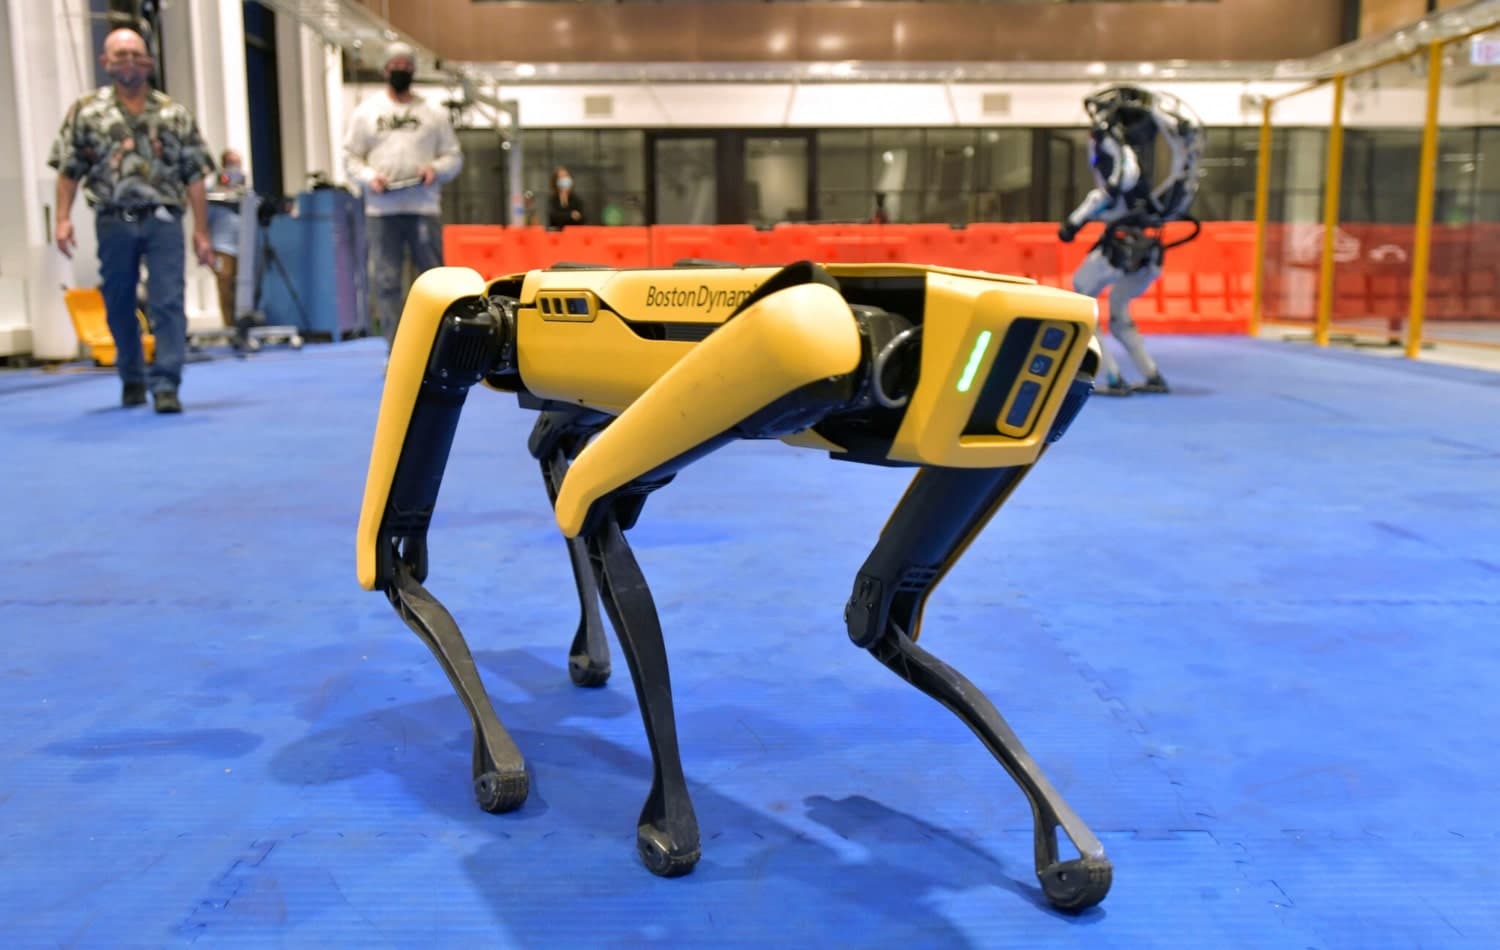 La police de New York renonce au chien robot de Boston Dynamics après de vives critiques